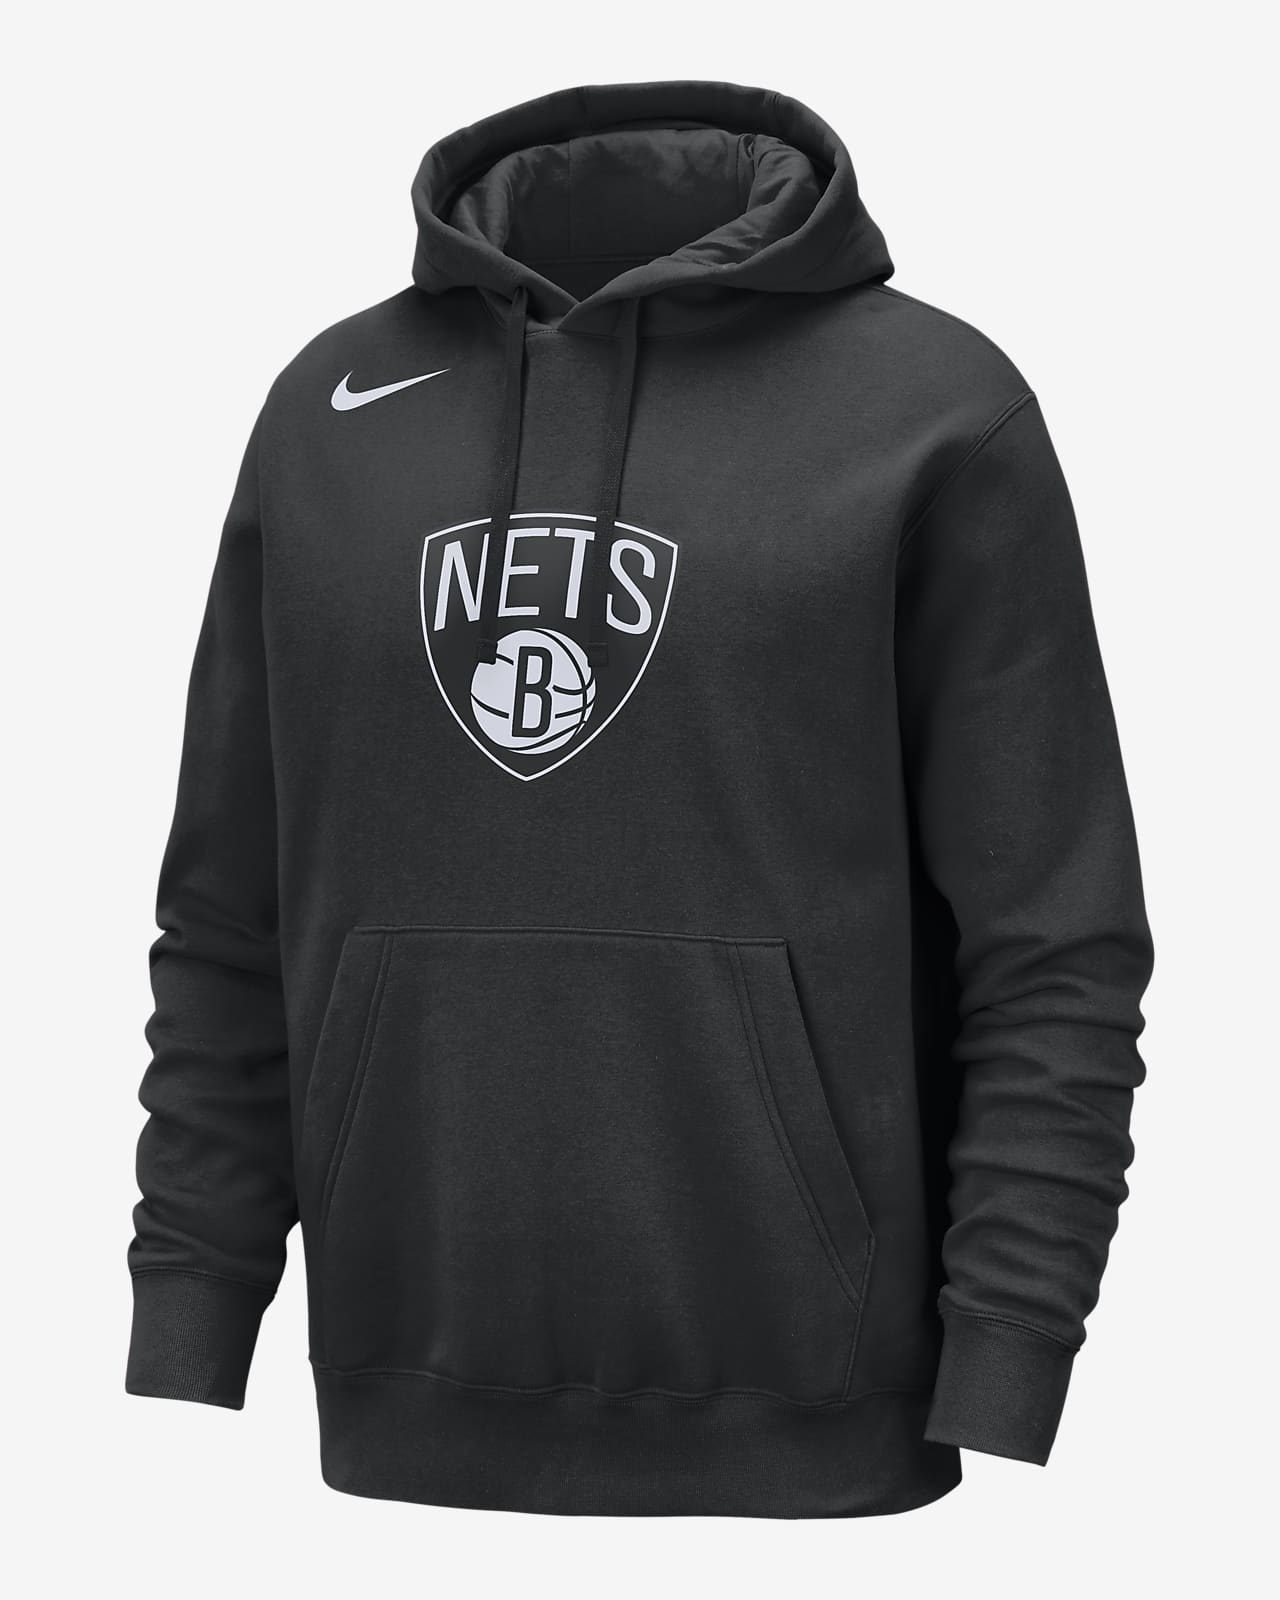 Ανδρικό φούτερ με κουκούλα Nike NBA Μπρούκλιν Νετς Club